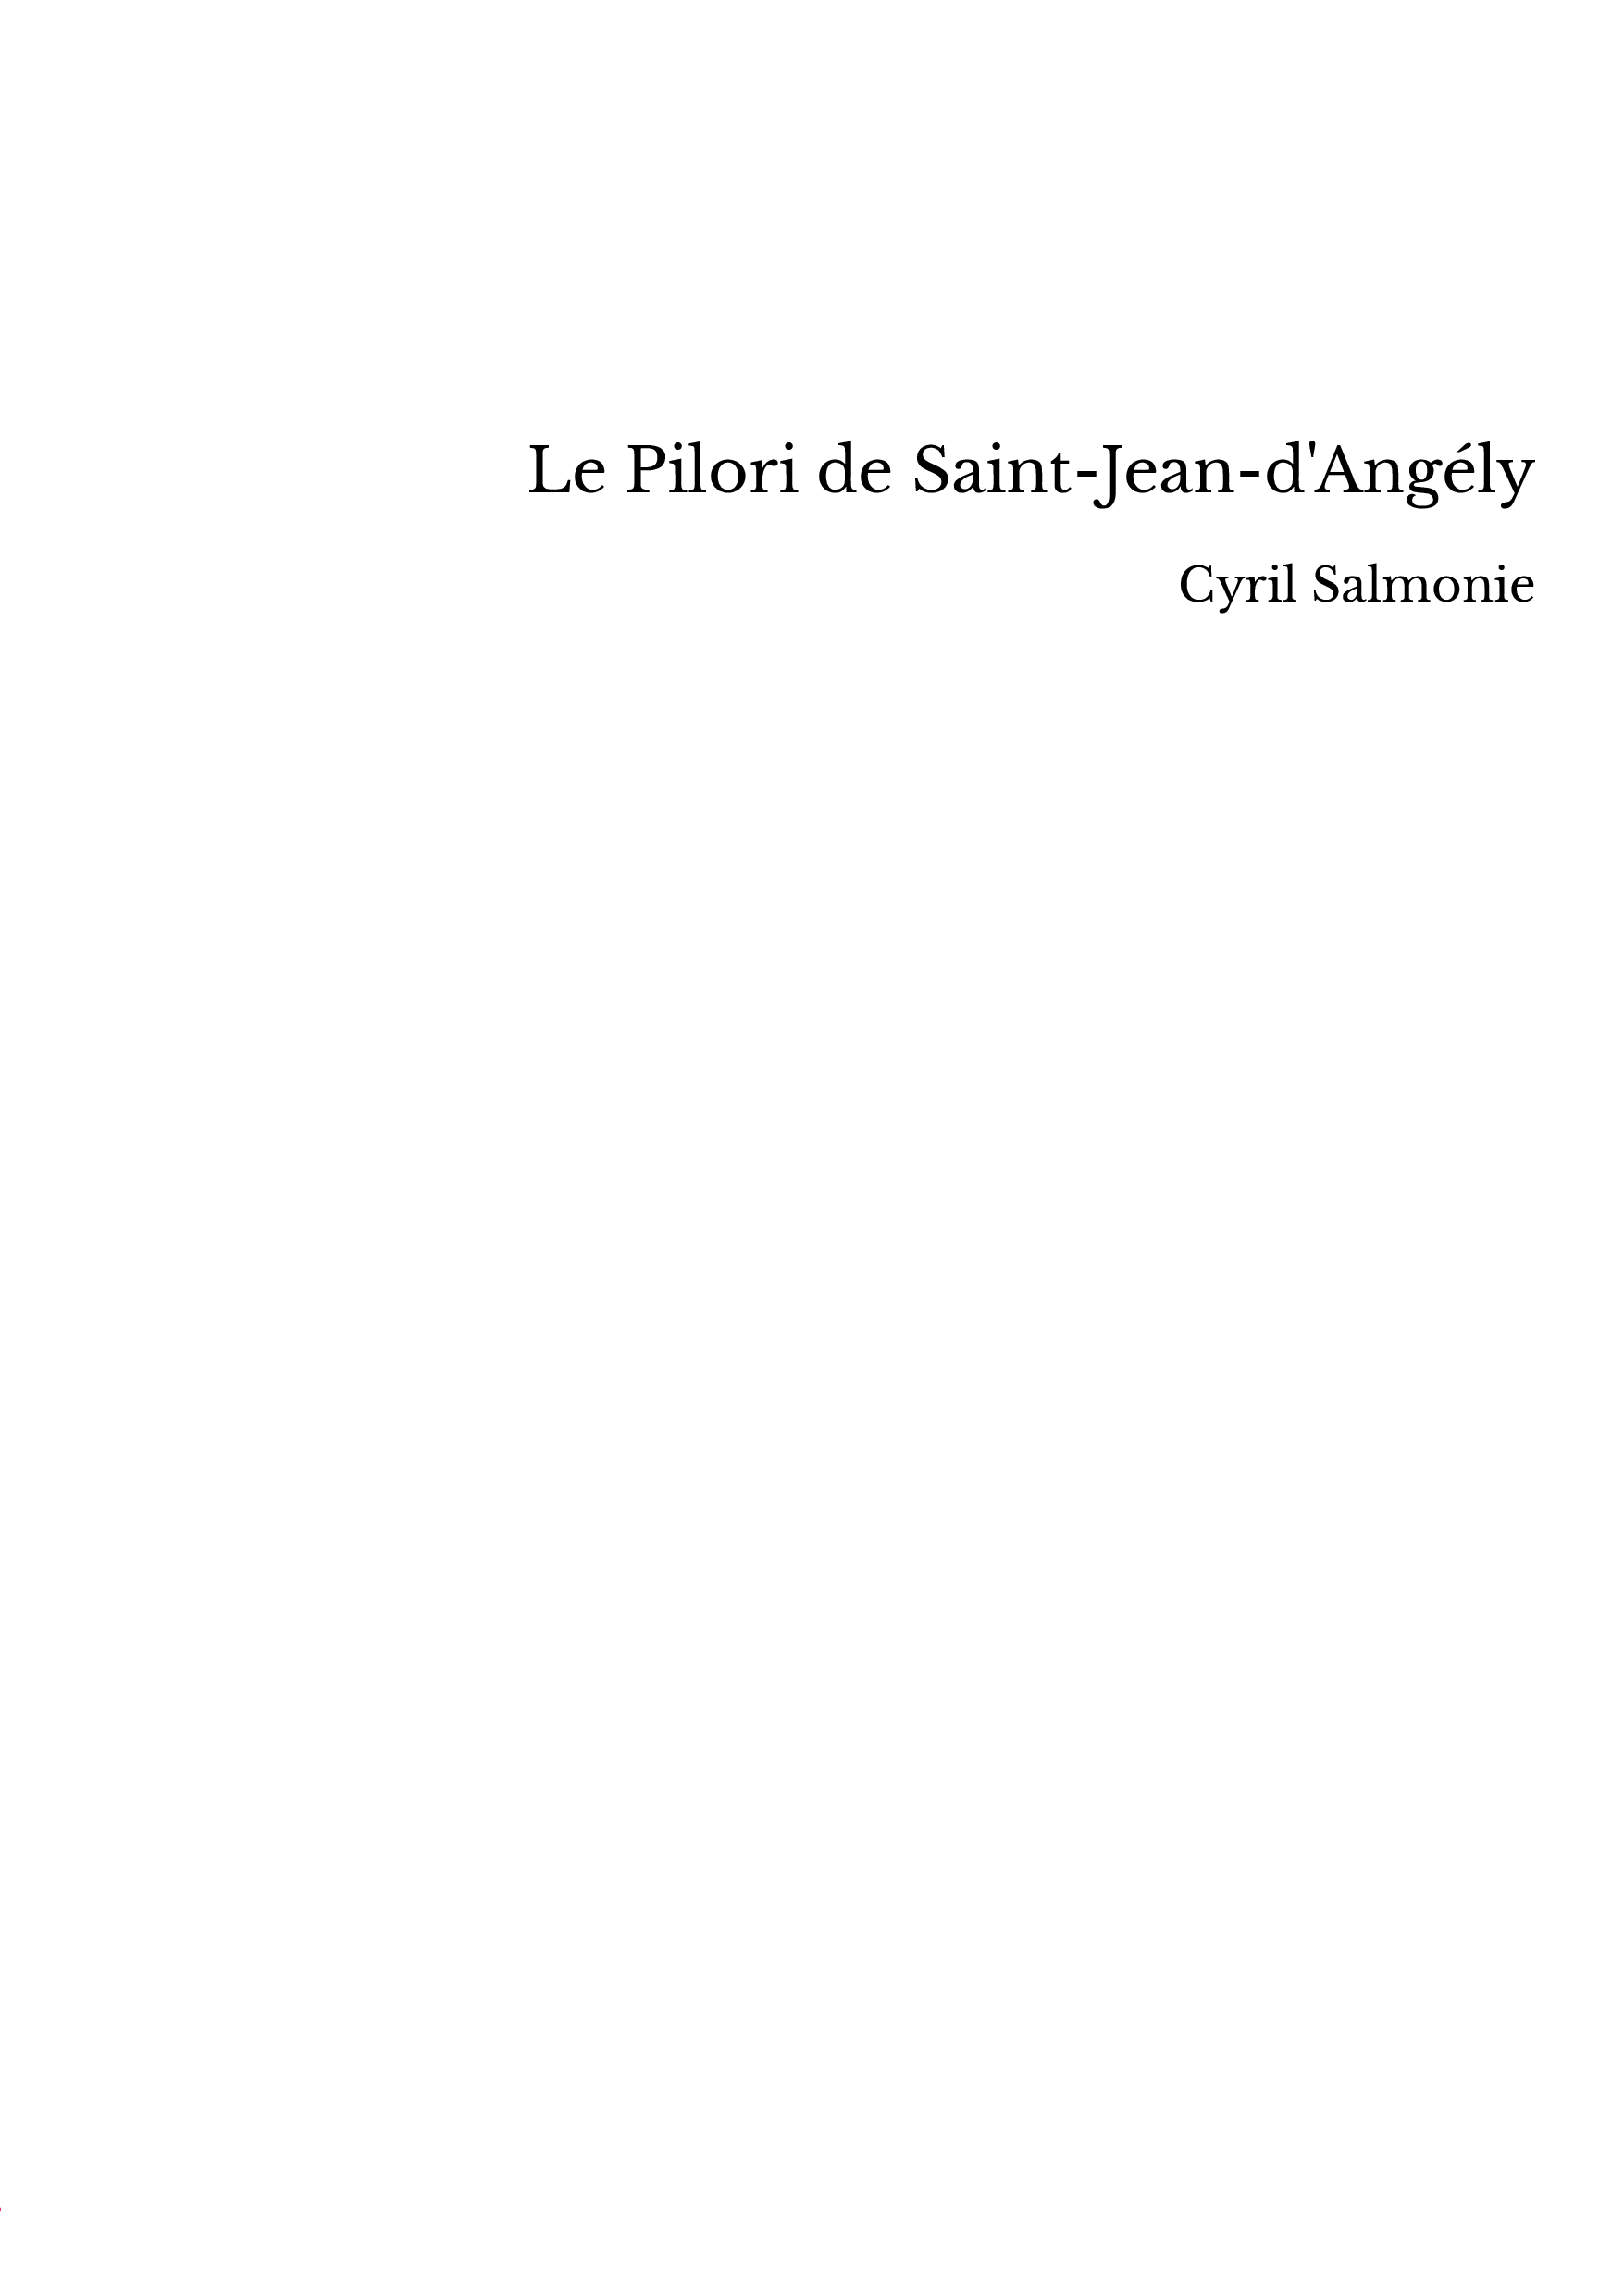 Le Pilori de Saint-Jean-d'Angély